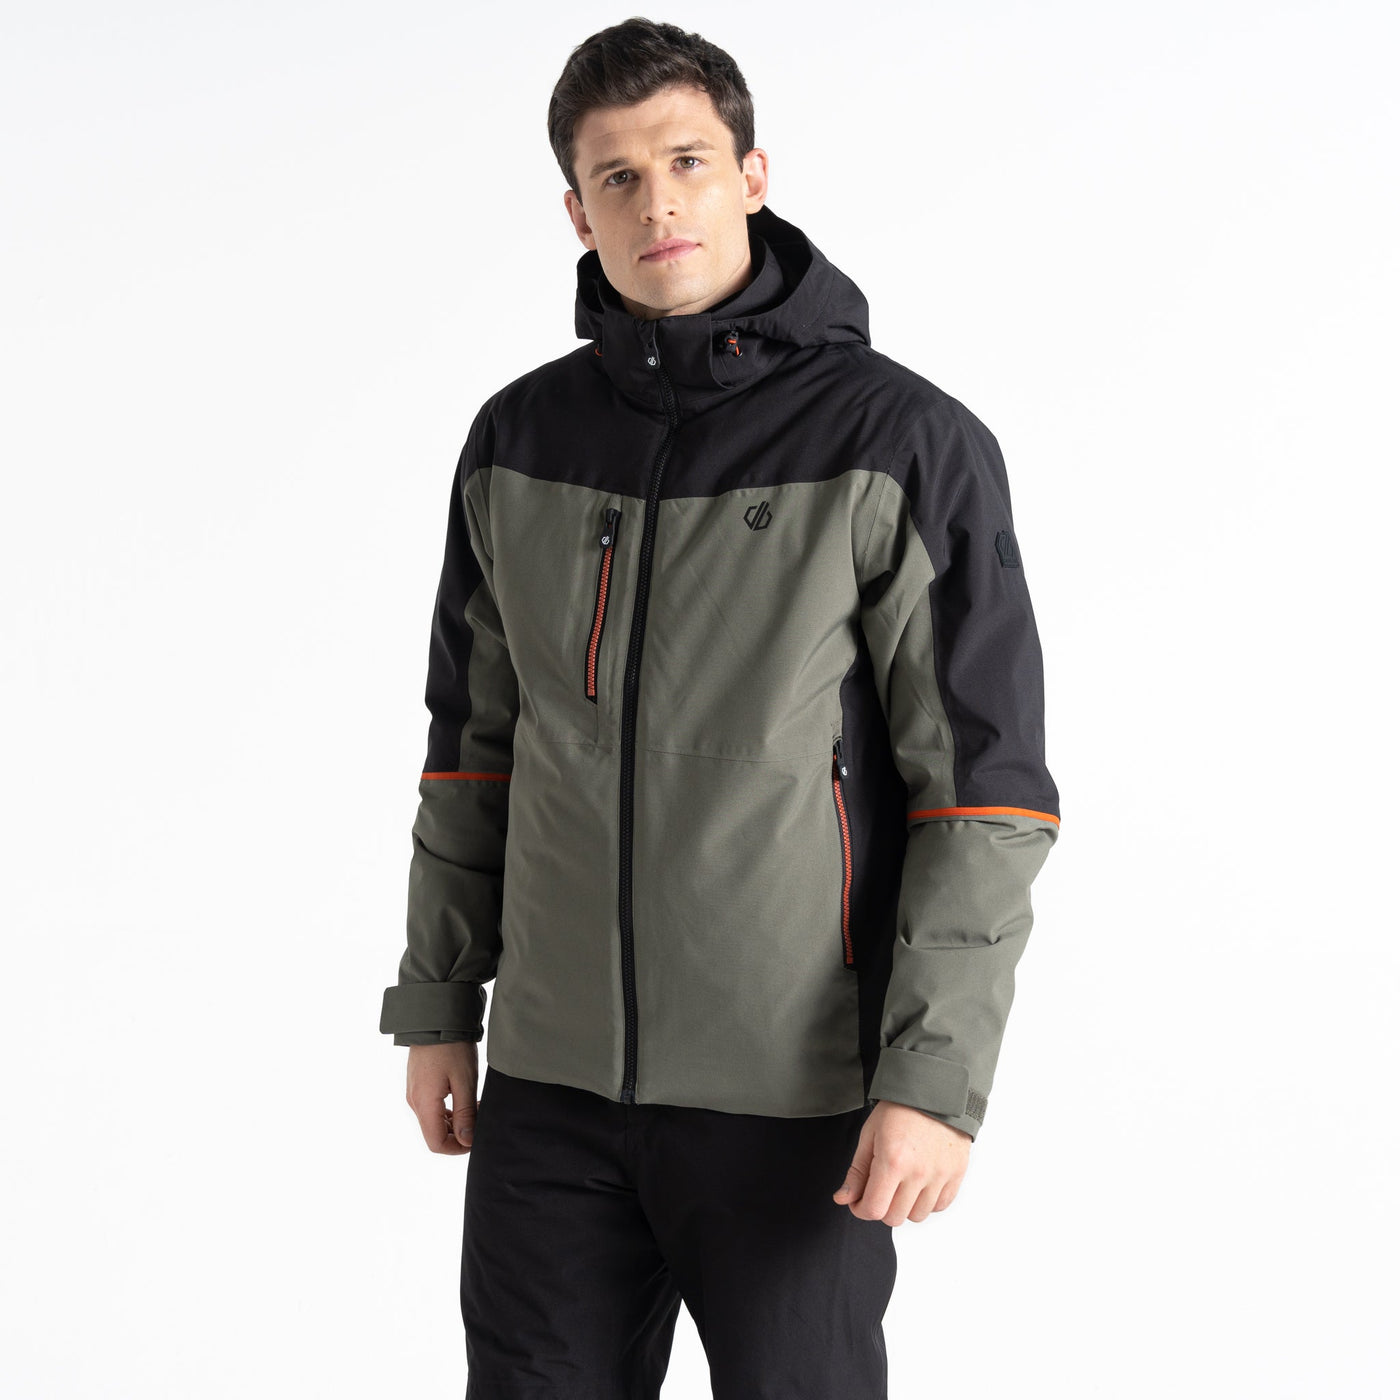 Plus Size- Dare2B Men's Eagle Jacket | Lichen Green/Black